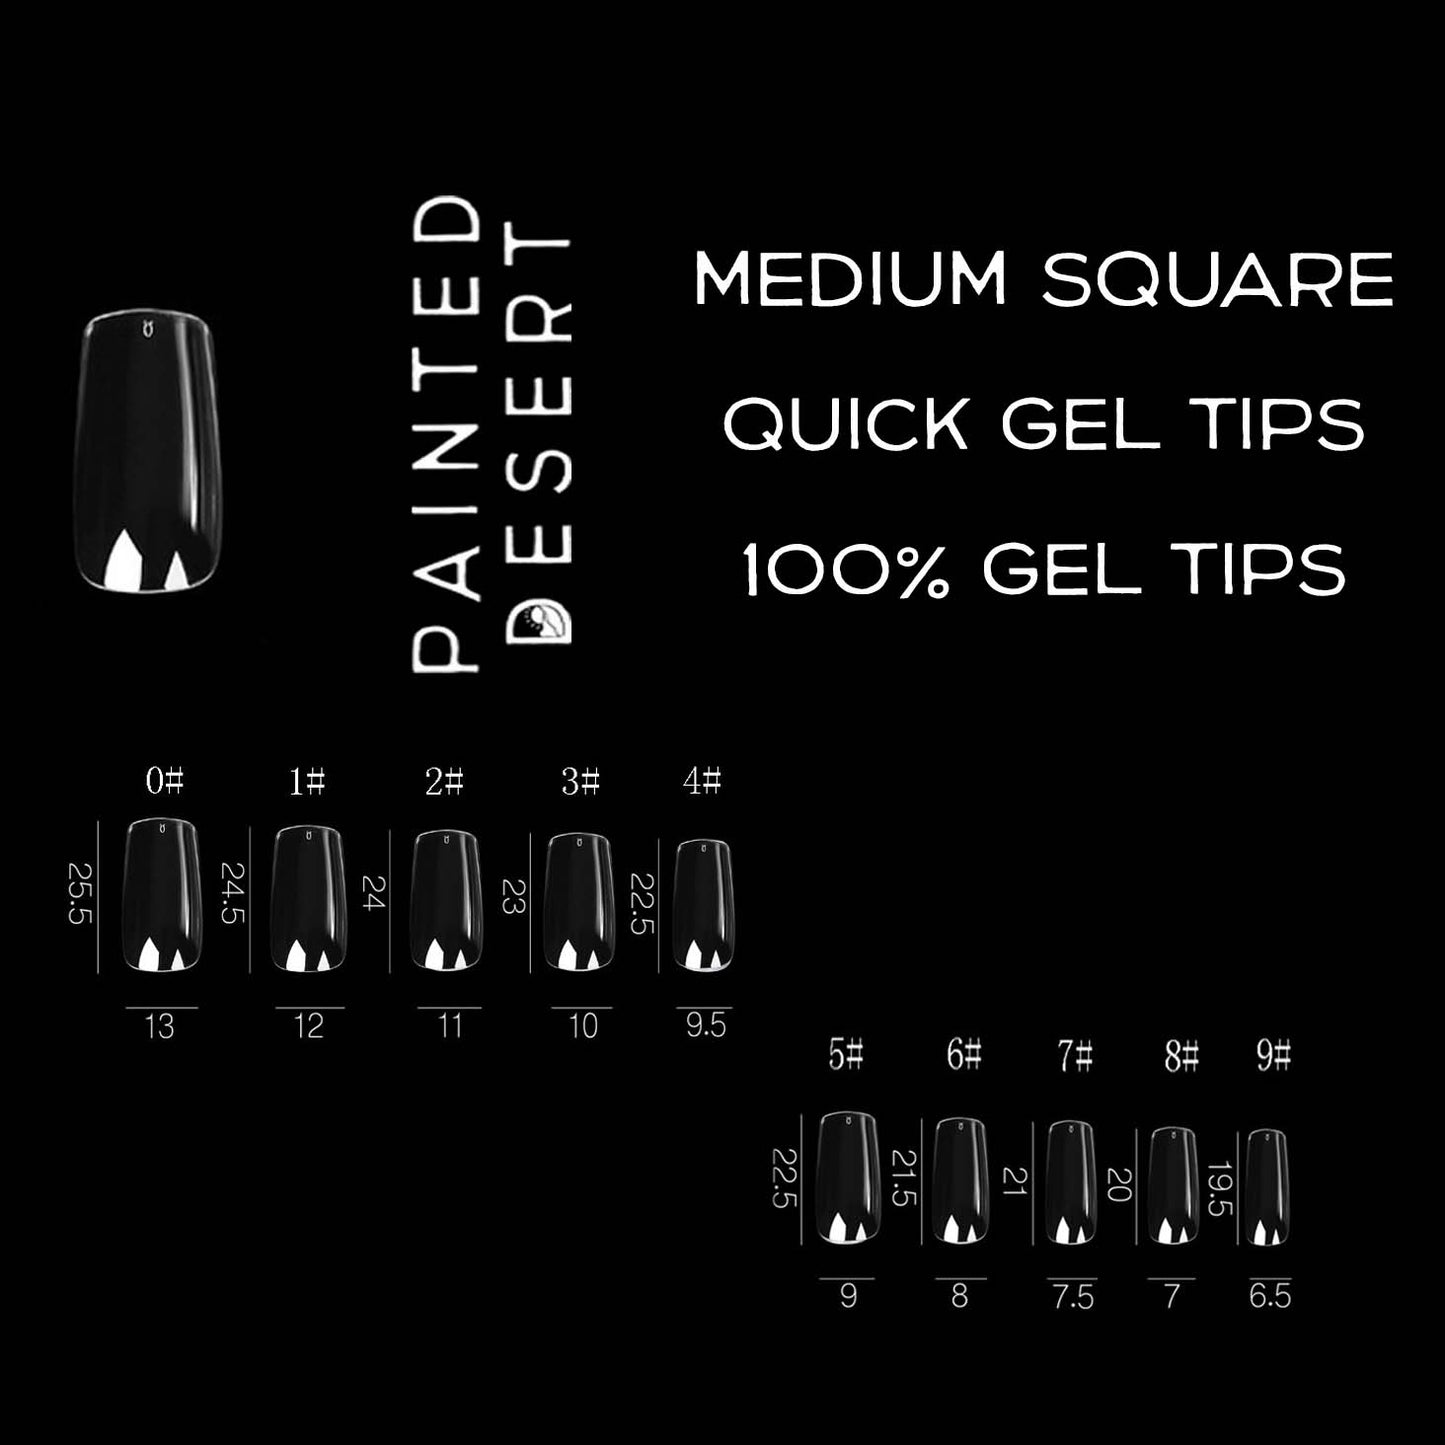 Medium Square SCULPTED Quick Gel Tips